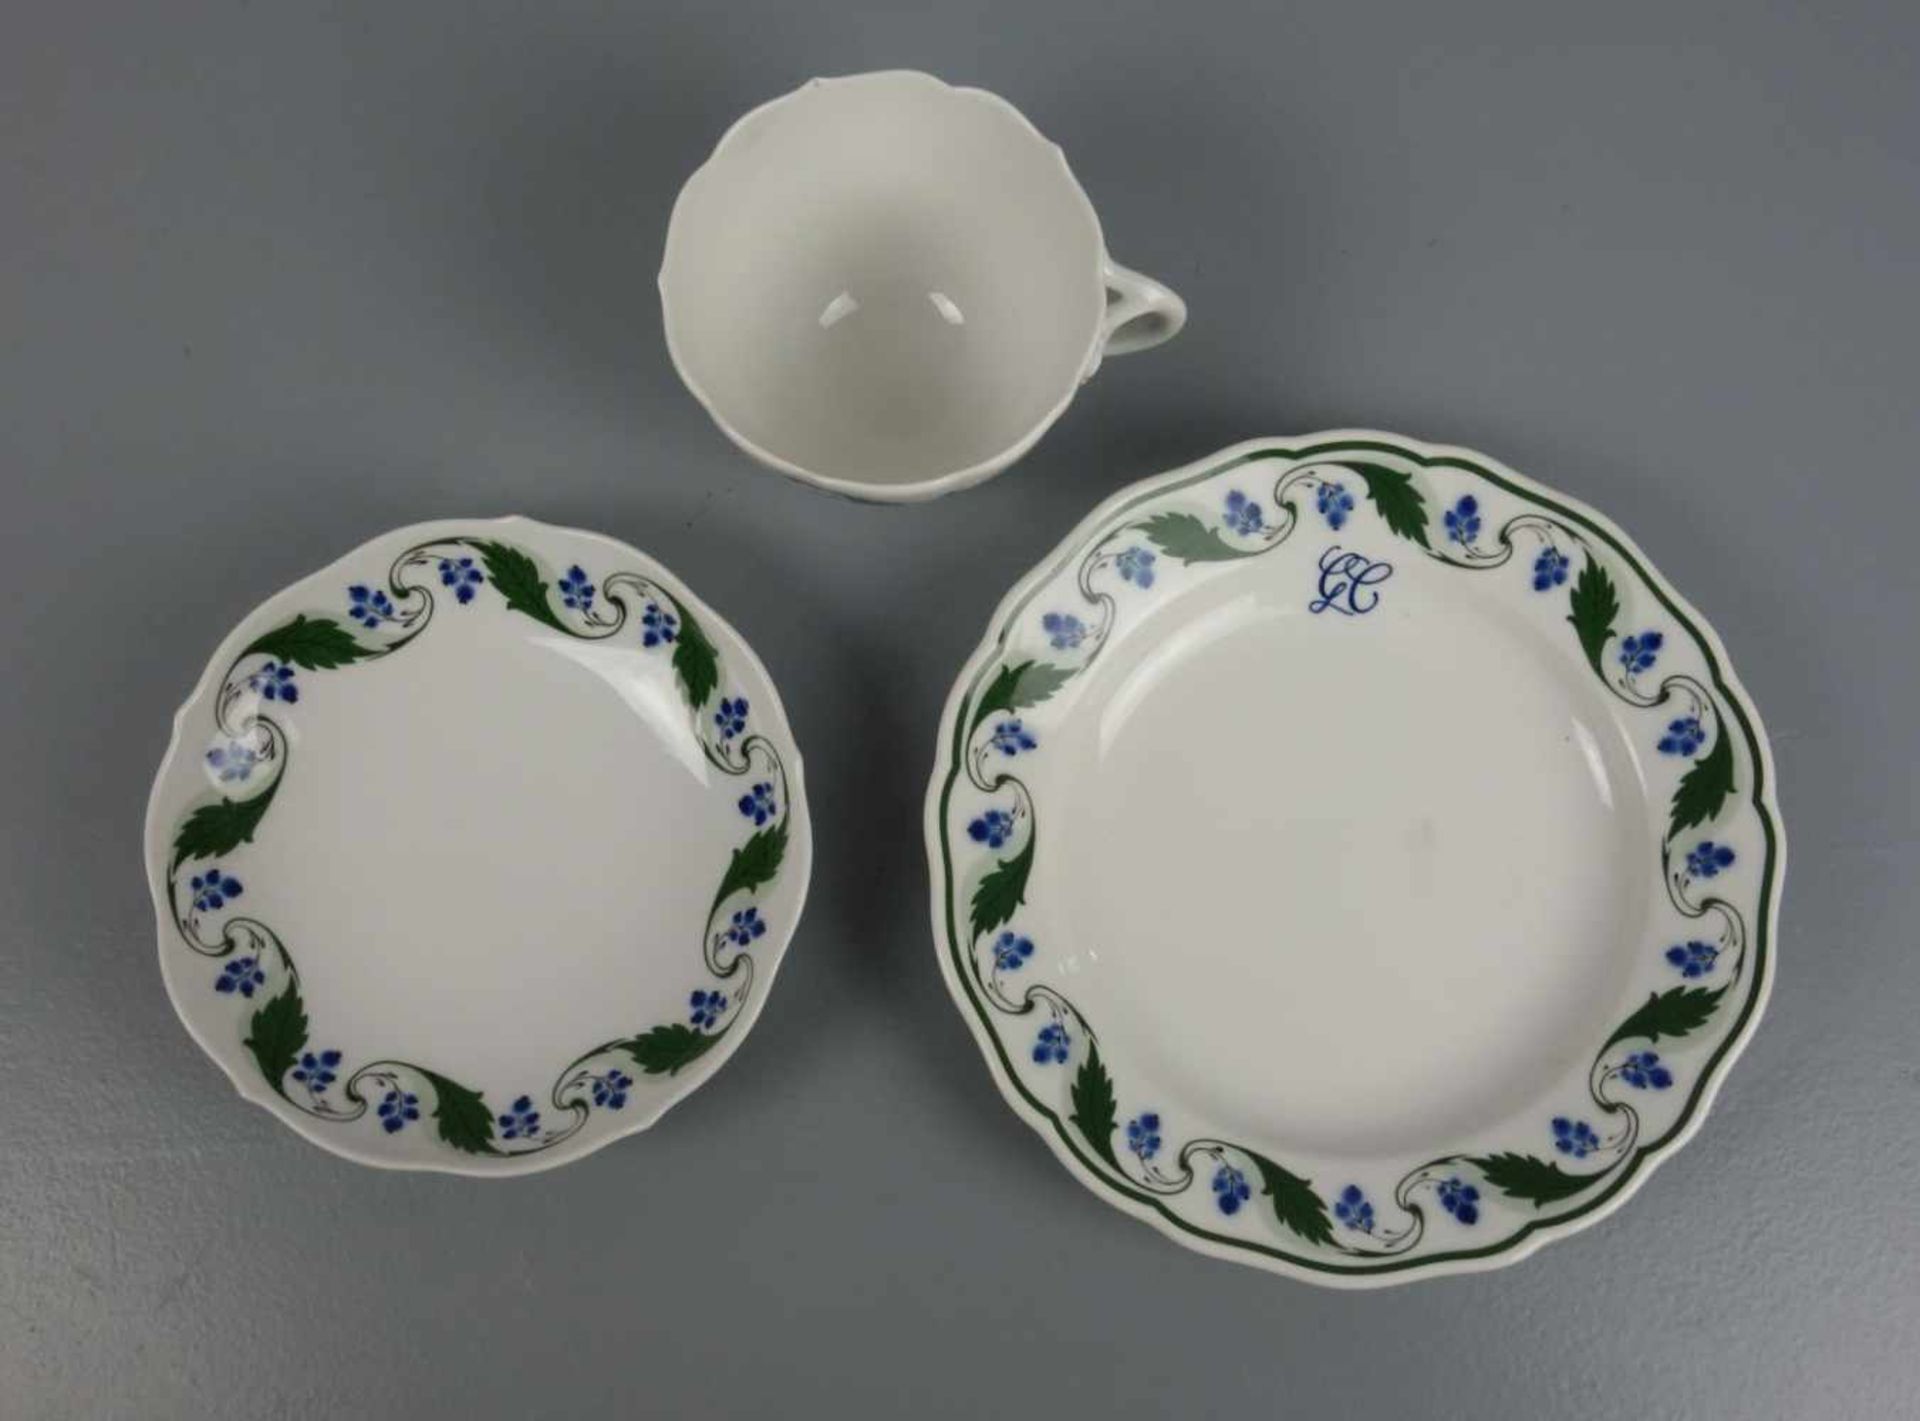 MEISSEN - GEDECK mit stilisiertem Blaubeerdekor: Tasse, Untertasse und Teller / cup, saucer and - Image 4 of 4